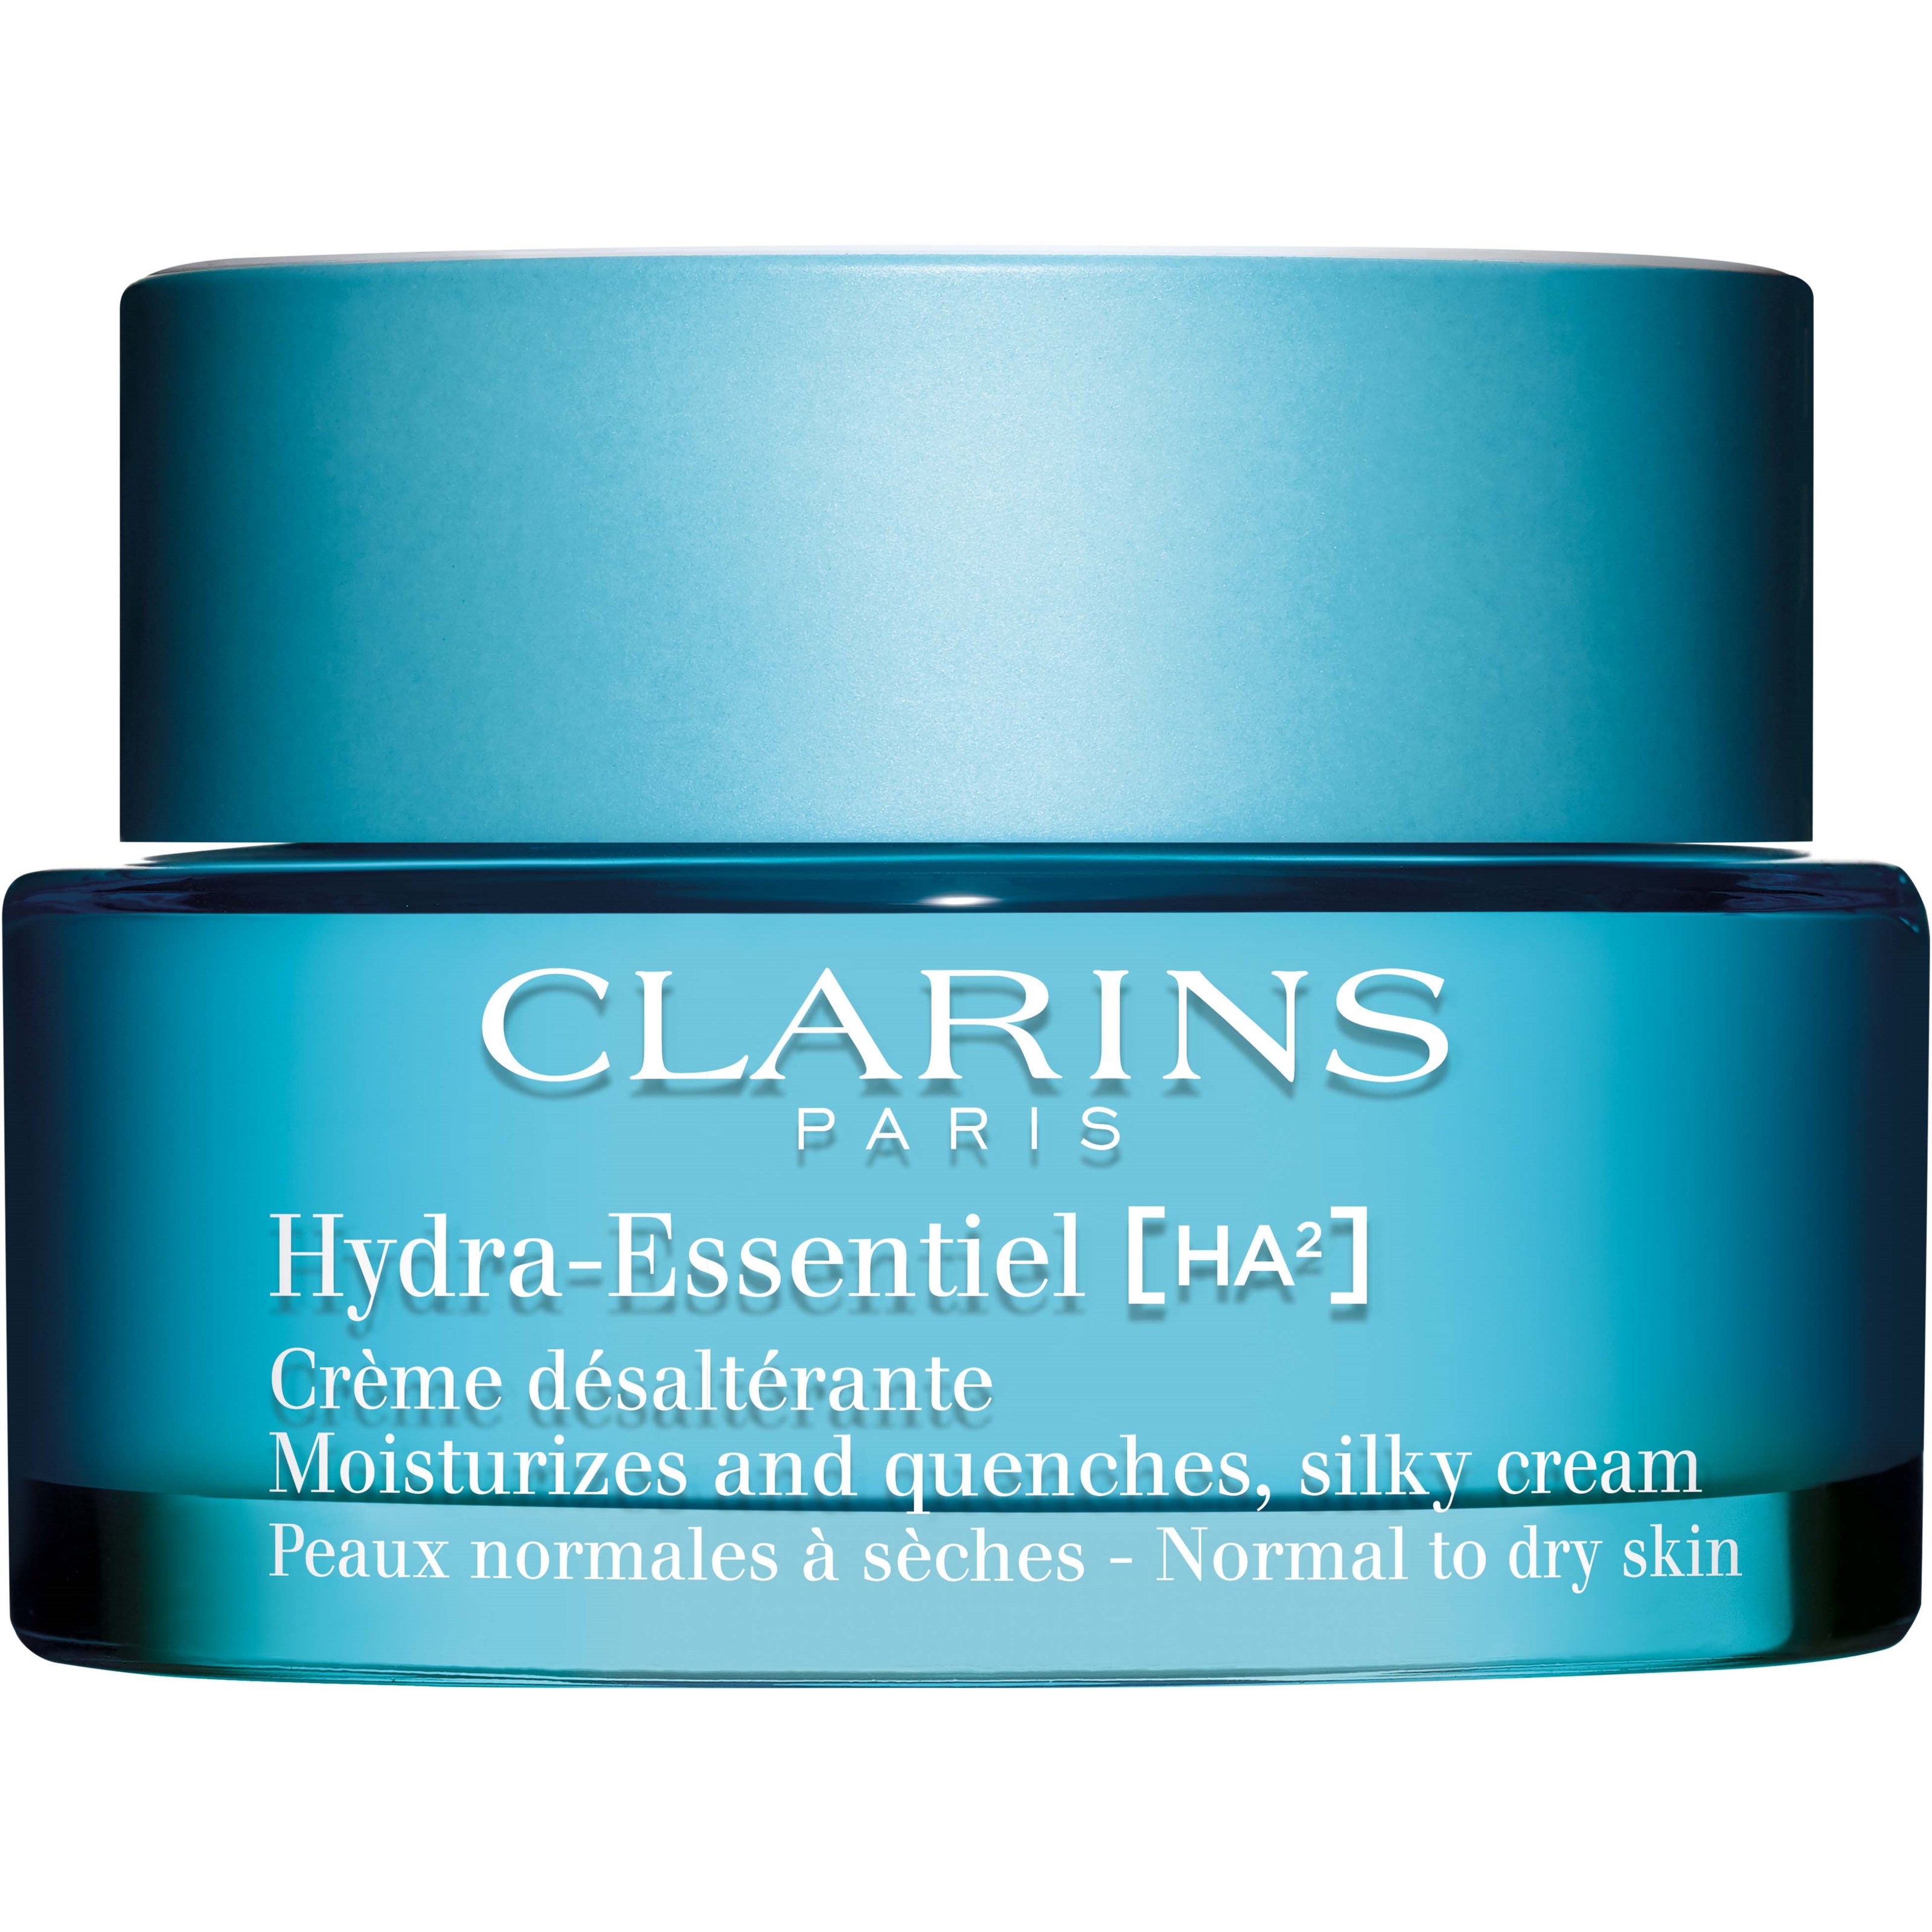 Bilde av Clarins Hydra-essentiel Moisturizes And Quenches, Silky Cream 50 Ml